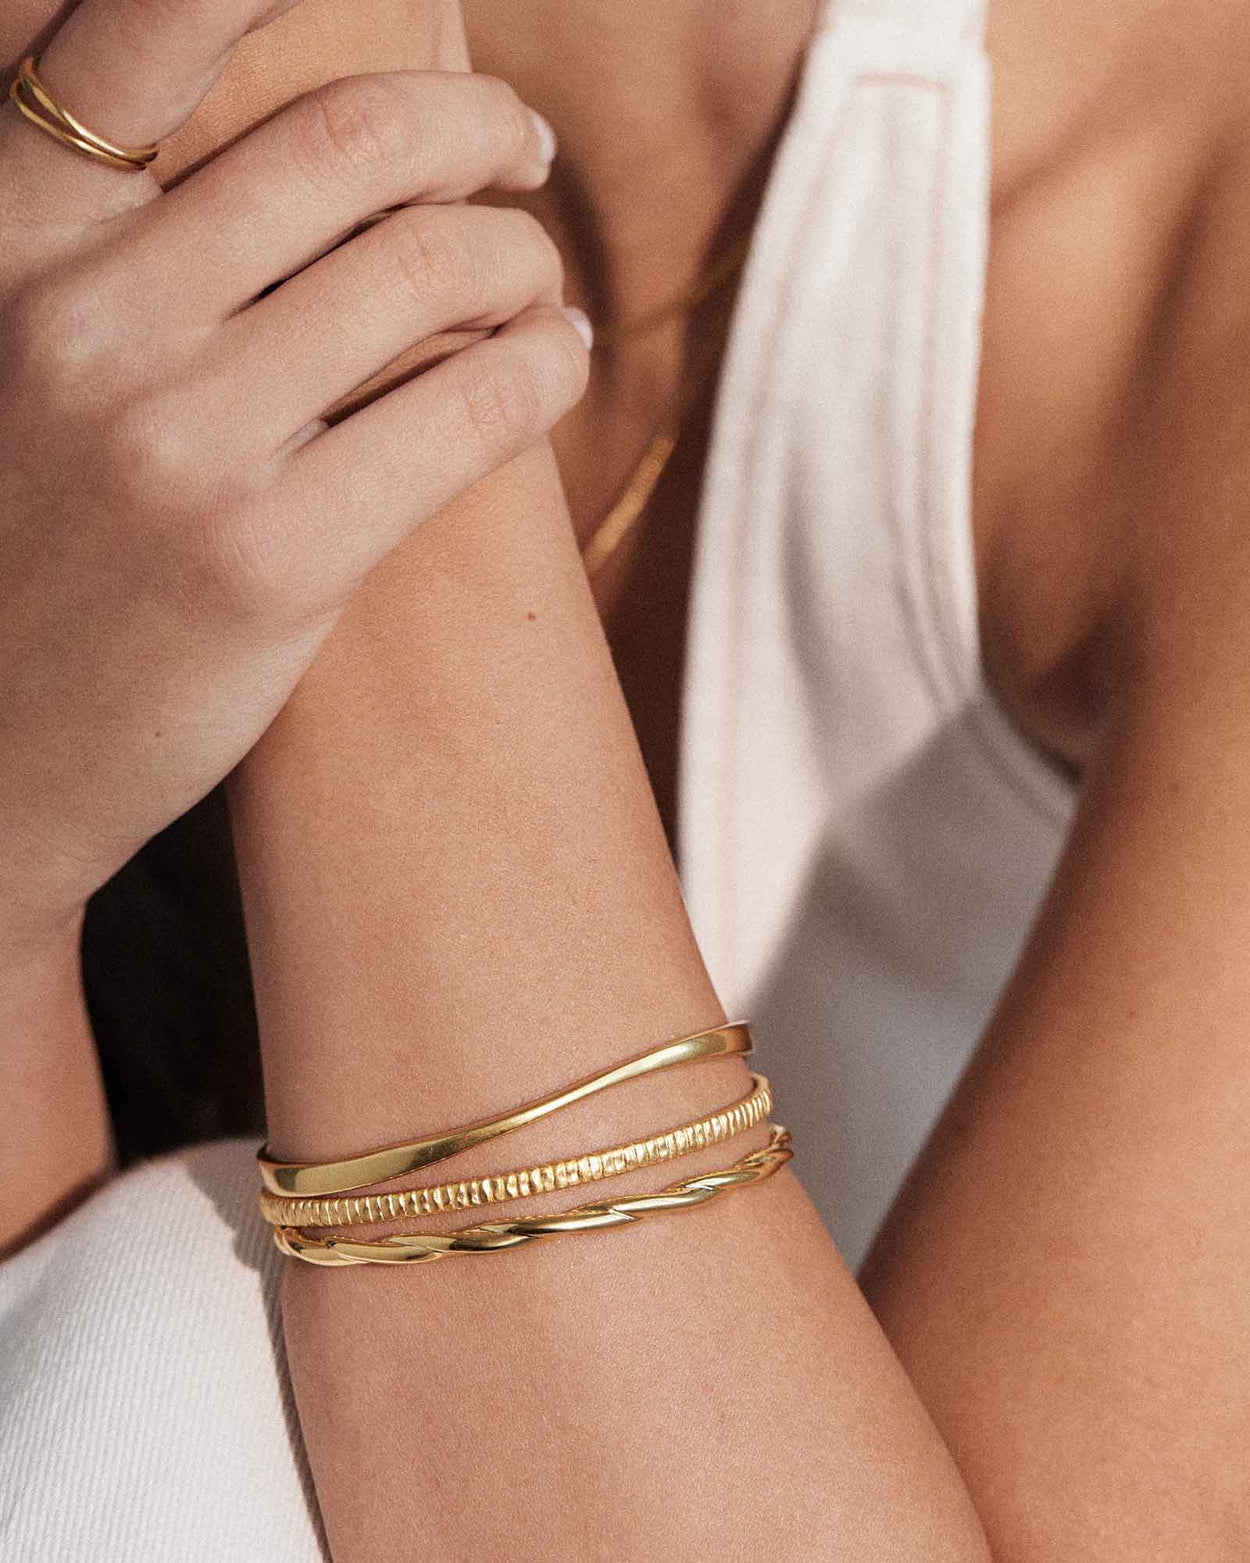 Roman Cuff Bracelet in 18K Gold – Long's Jewelers